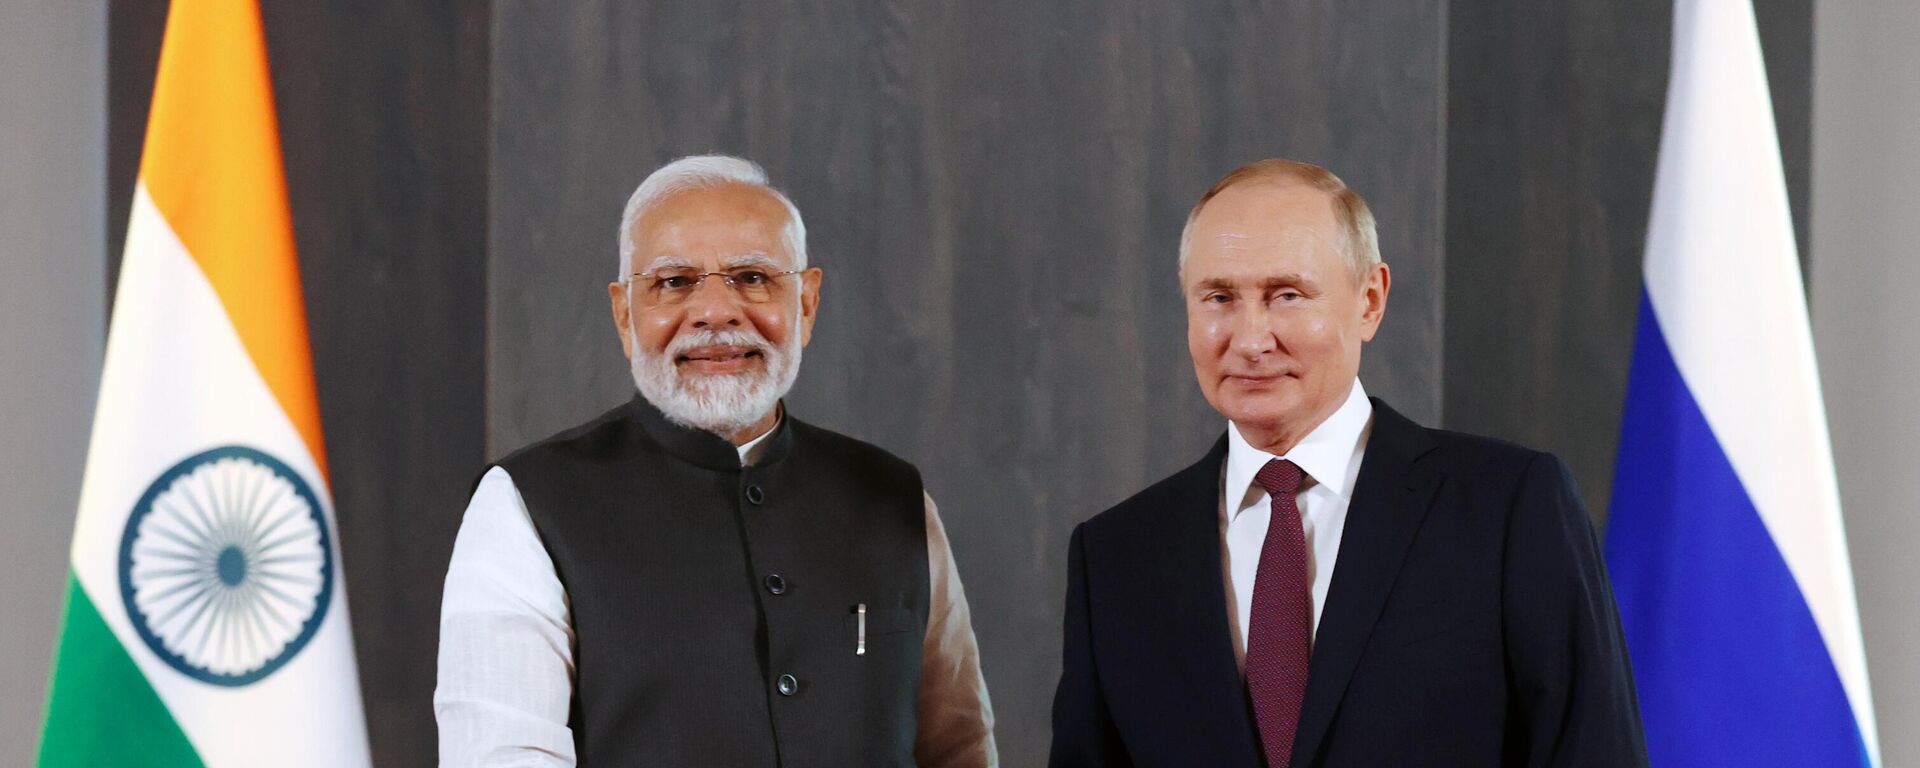 Rusya Devlet Başkanı Vladimir Putin, Semerkant’ta gerçekleşen Şanghay İşbirliği Örgütü (ŞİÖ) Devlet Başkanları 22. Toplantısı kapsamında Hindistan Başbakanı Narendra Modi ile bir araya geldi. - Sputnik Türkiye, 1920, 16.09.2022